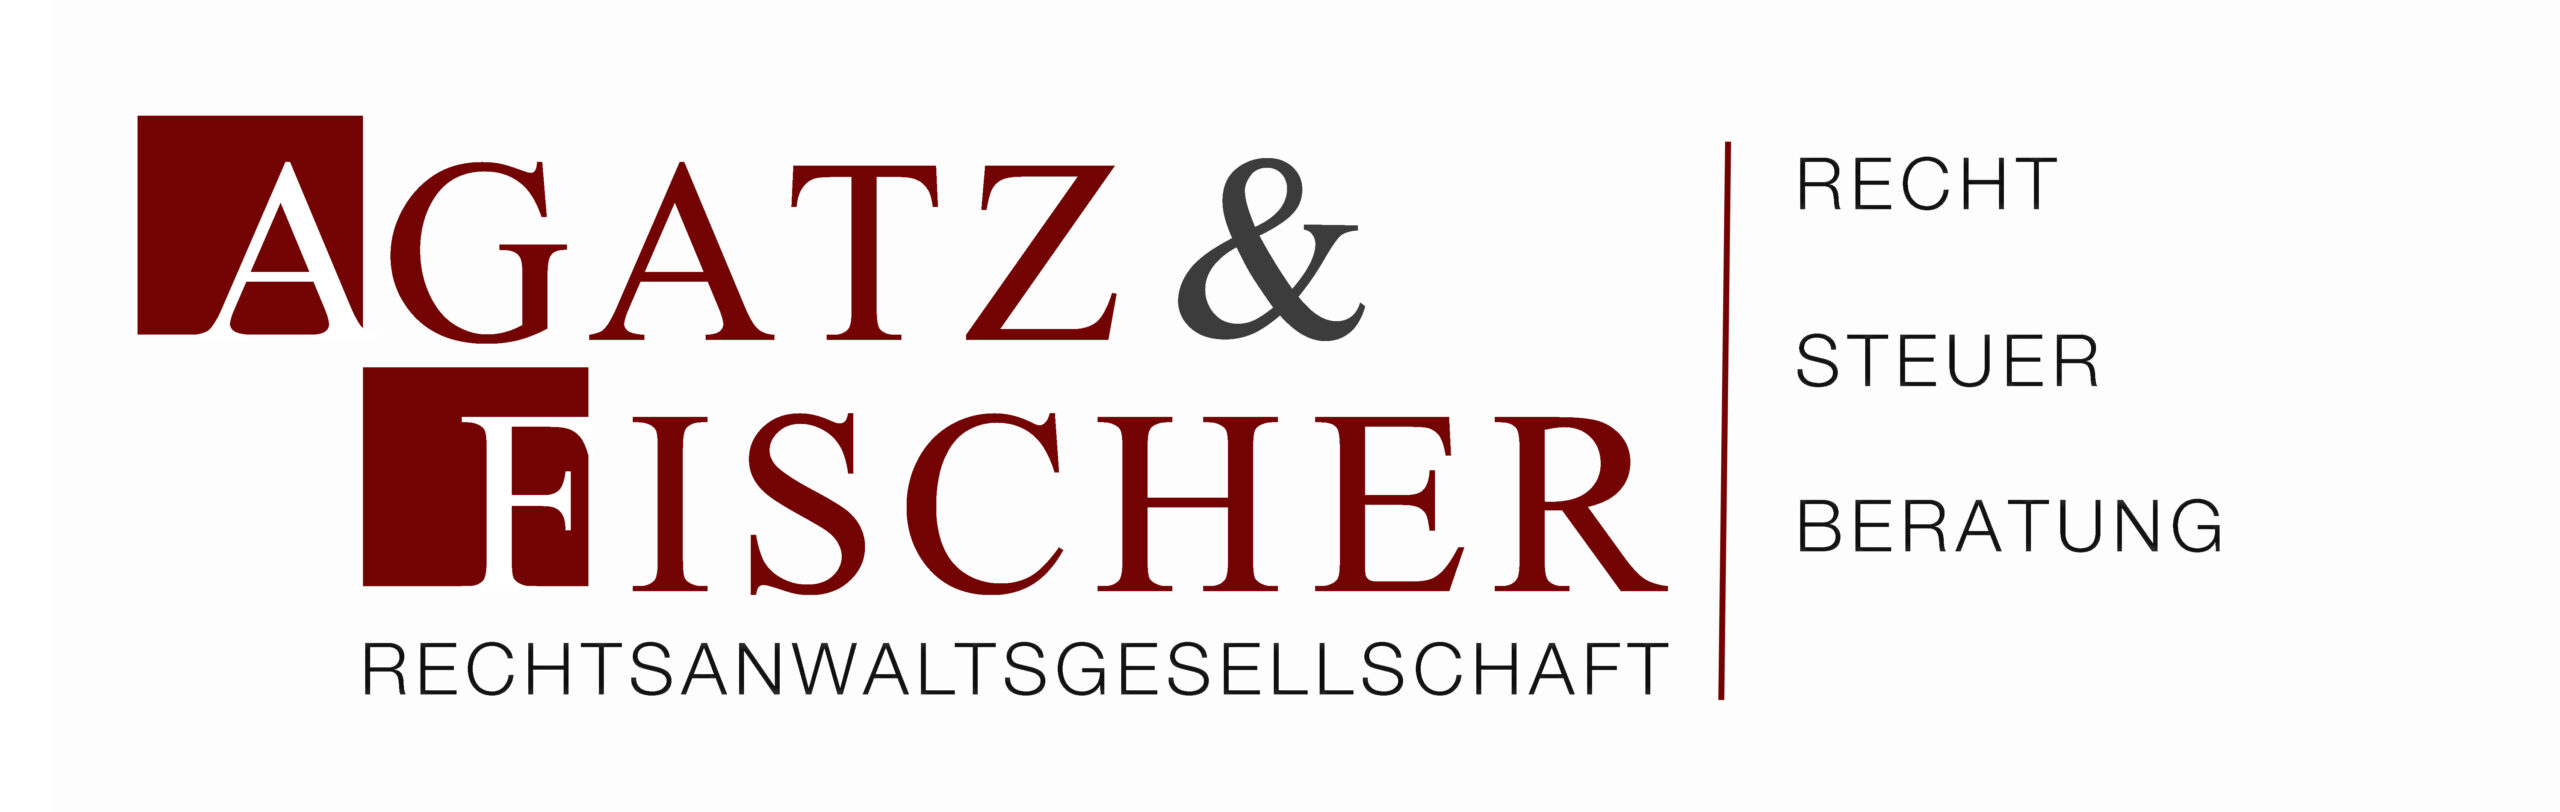 Agatz-Fischer Rechtsanwaltsgesellschaft